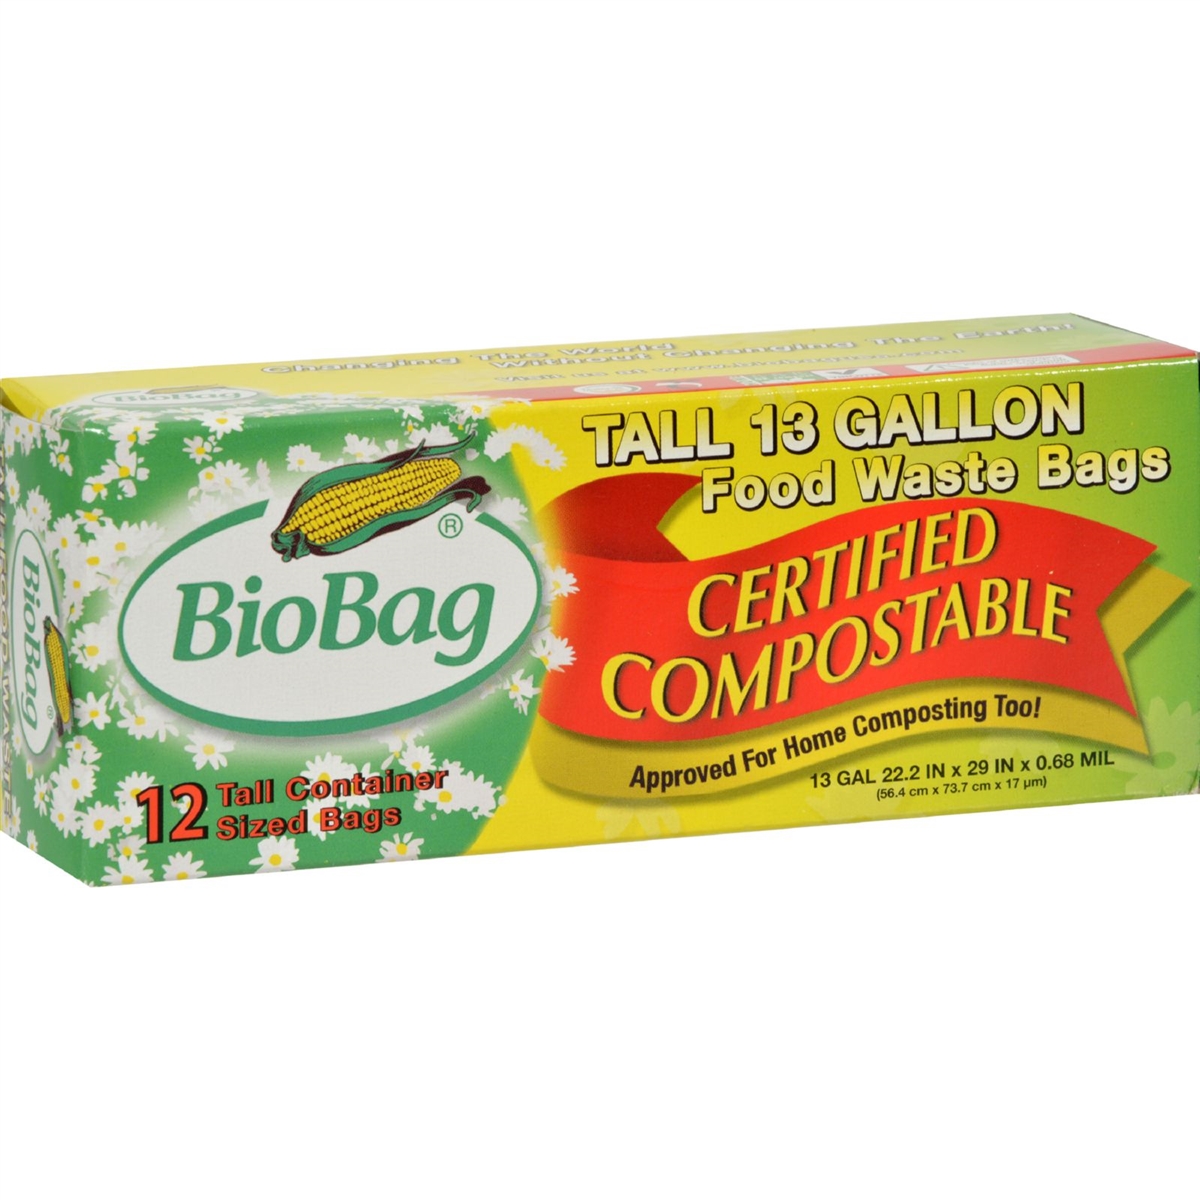 BioBag Small 3 Gallon Food Scrap Bags